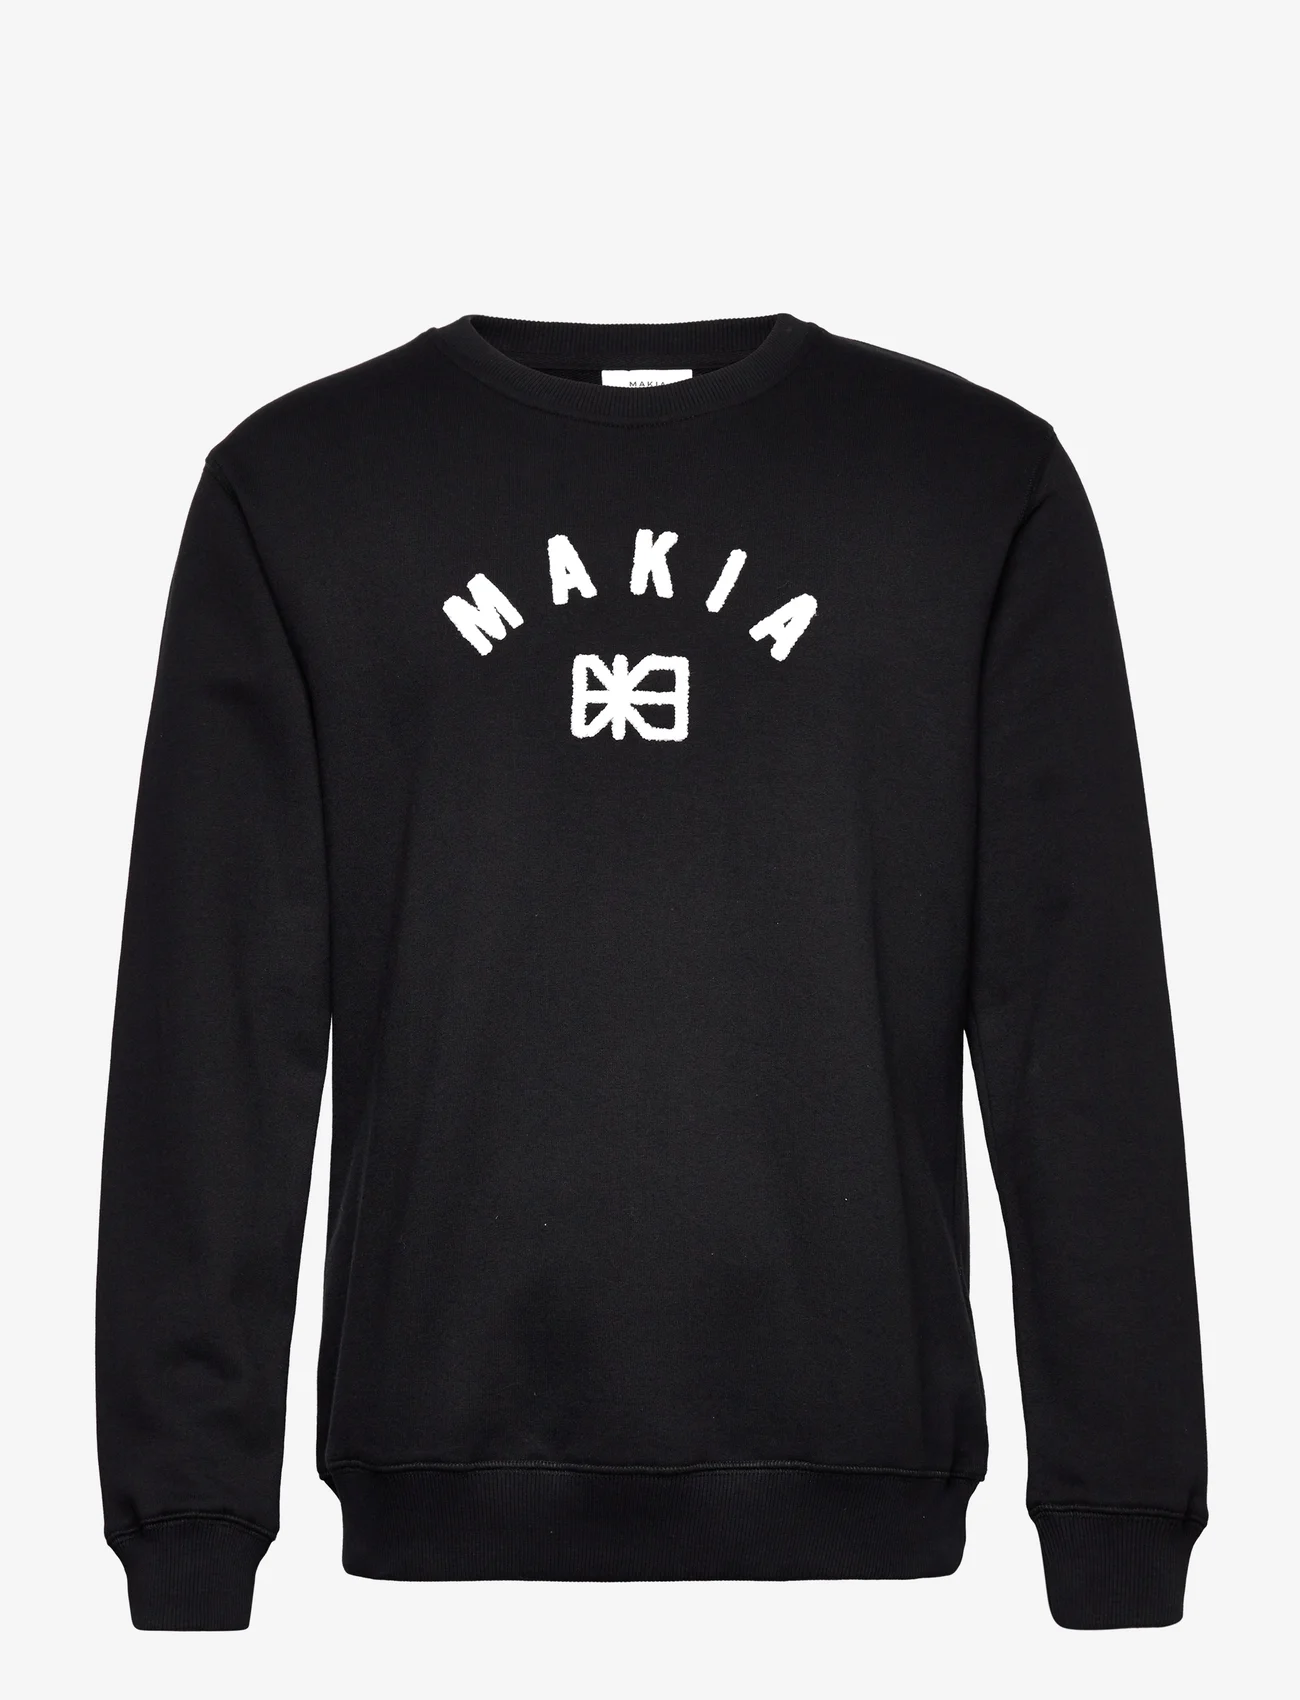 Makia - Brand Sweatshirt - sweatshirts - black - 0